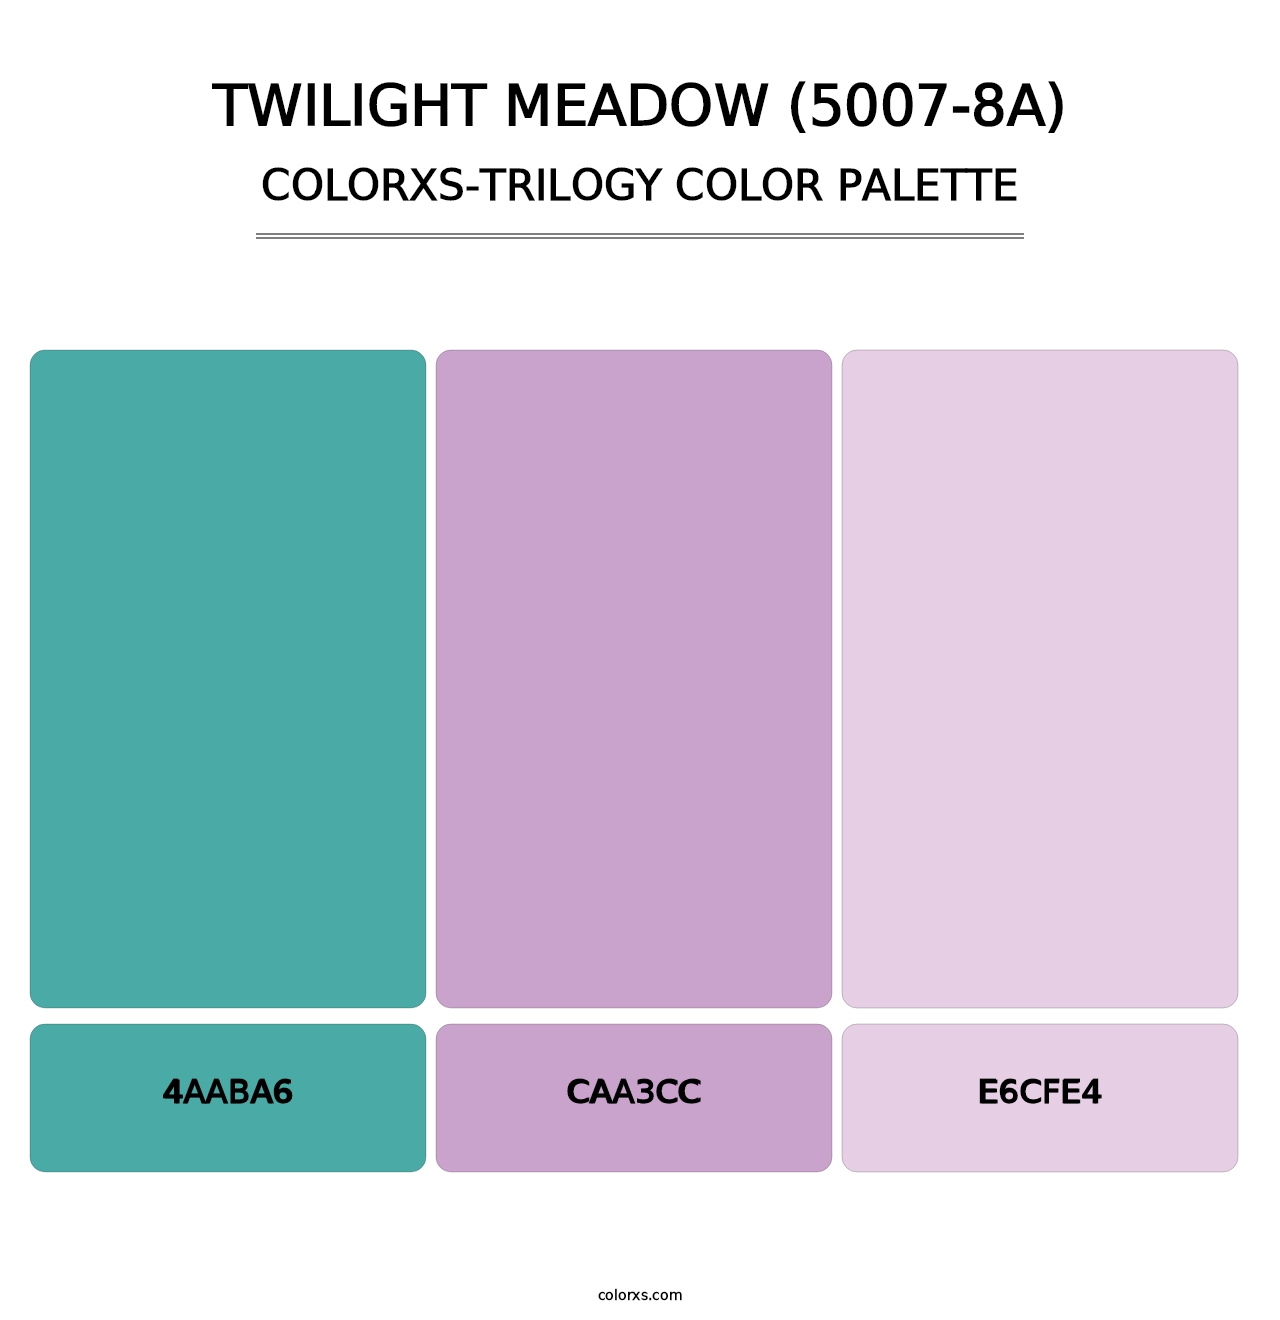 Twilight Meadow (5007-8A) - Colorxs Trilogy Palette